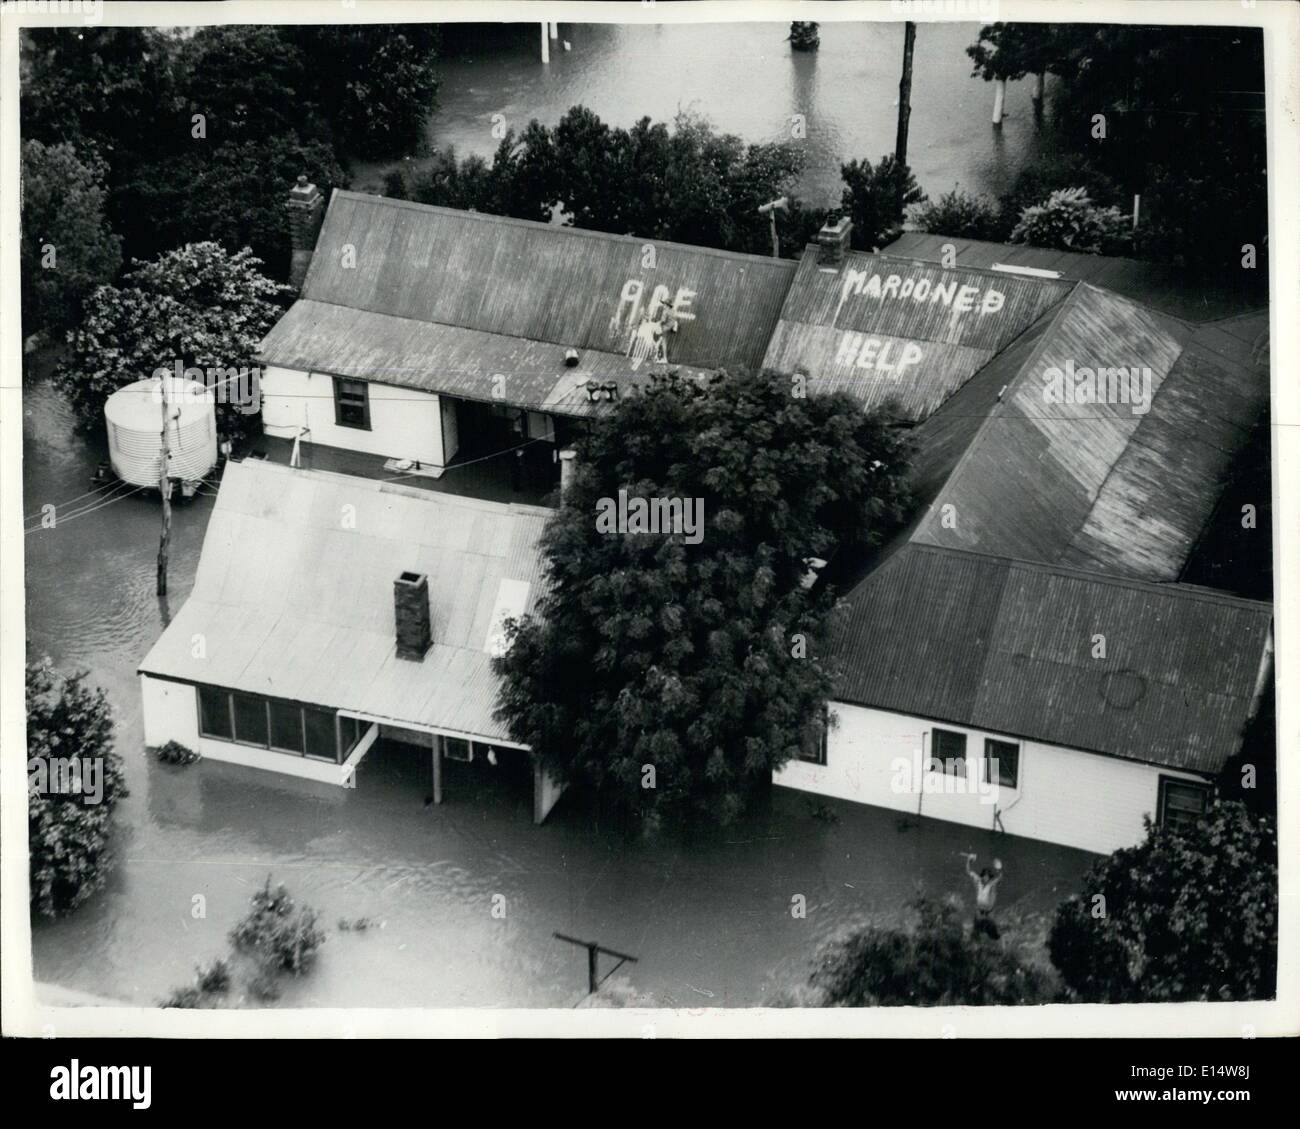 18. April 2012 - schwere Überschwemmungen IN NEW SOUTH WALES: Schweren Überschwemmungen in New South Wales gerendert haben viele tausend Obdachlosen- und diese Luftaufnahme zeigt ein S.O.S. für Hilfe auf dem Dach eines der vielen ausgesetzten Wohnungen gemalt. Stockfoto